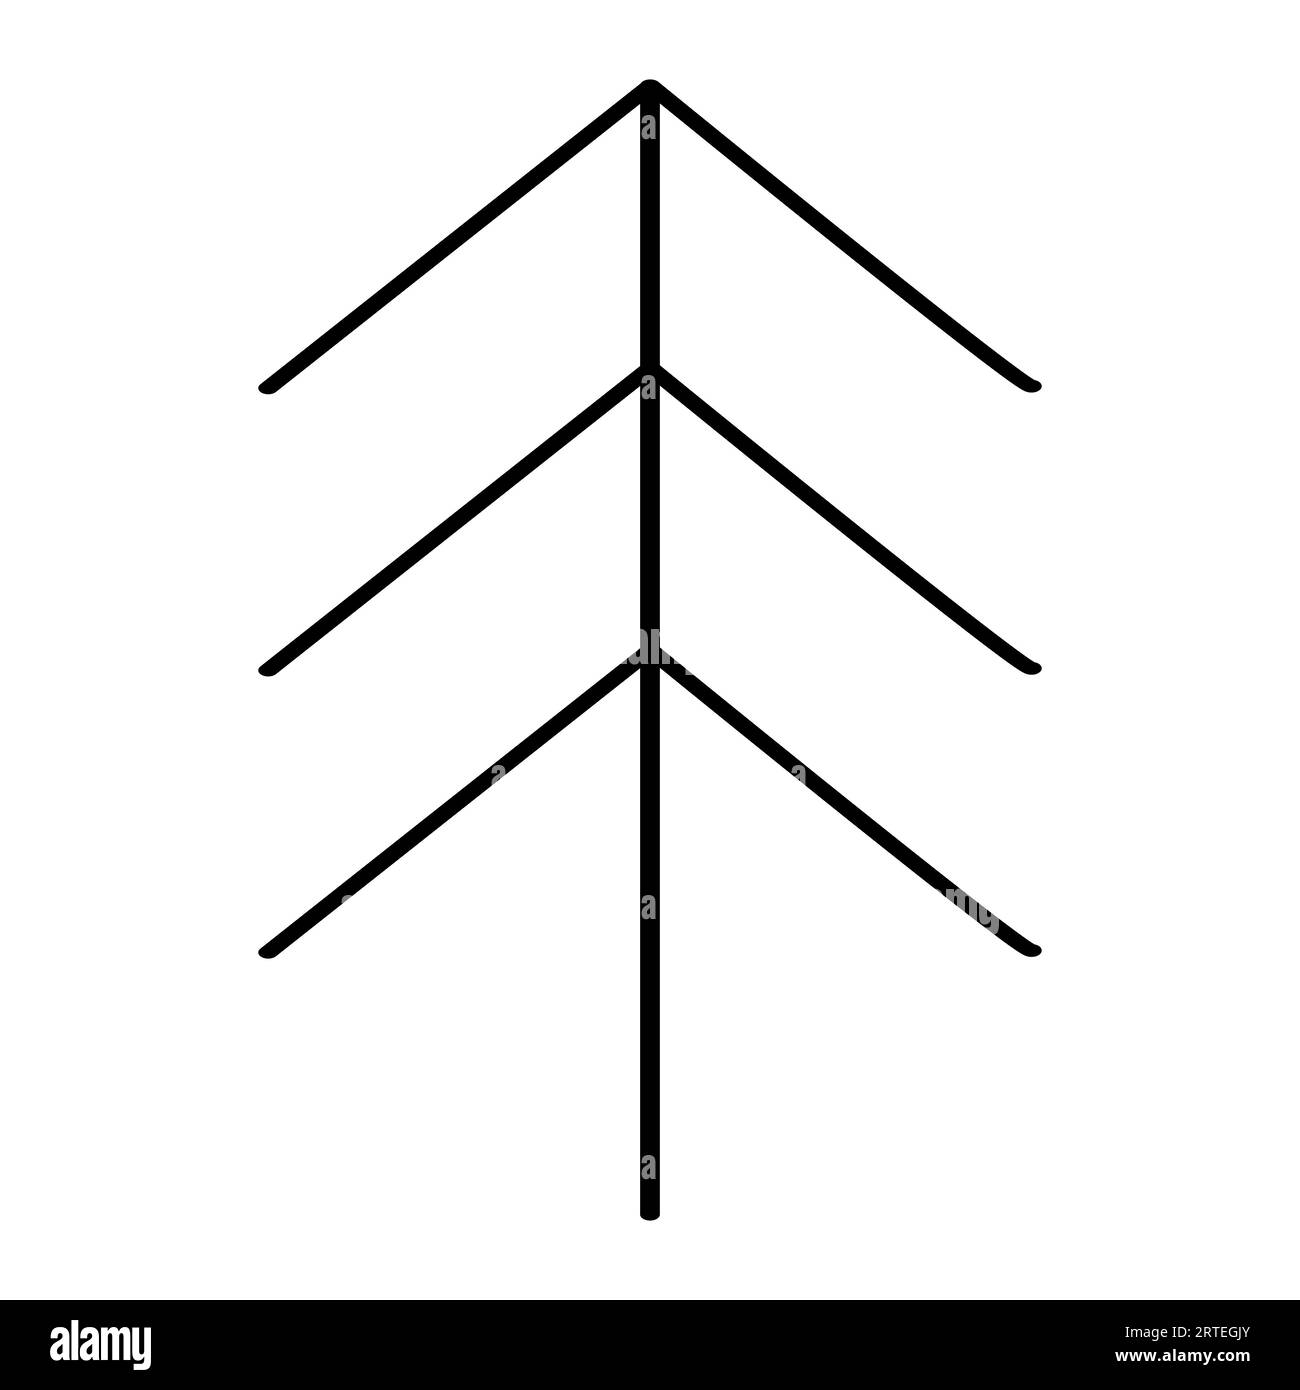 Vereinfachte Weihnachtsbaum- oder Kiefernsilhouette, flache Vektorumrisszeichnung im Kritzelstil Stock Vektor